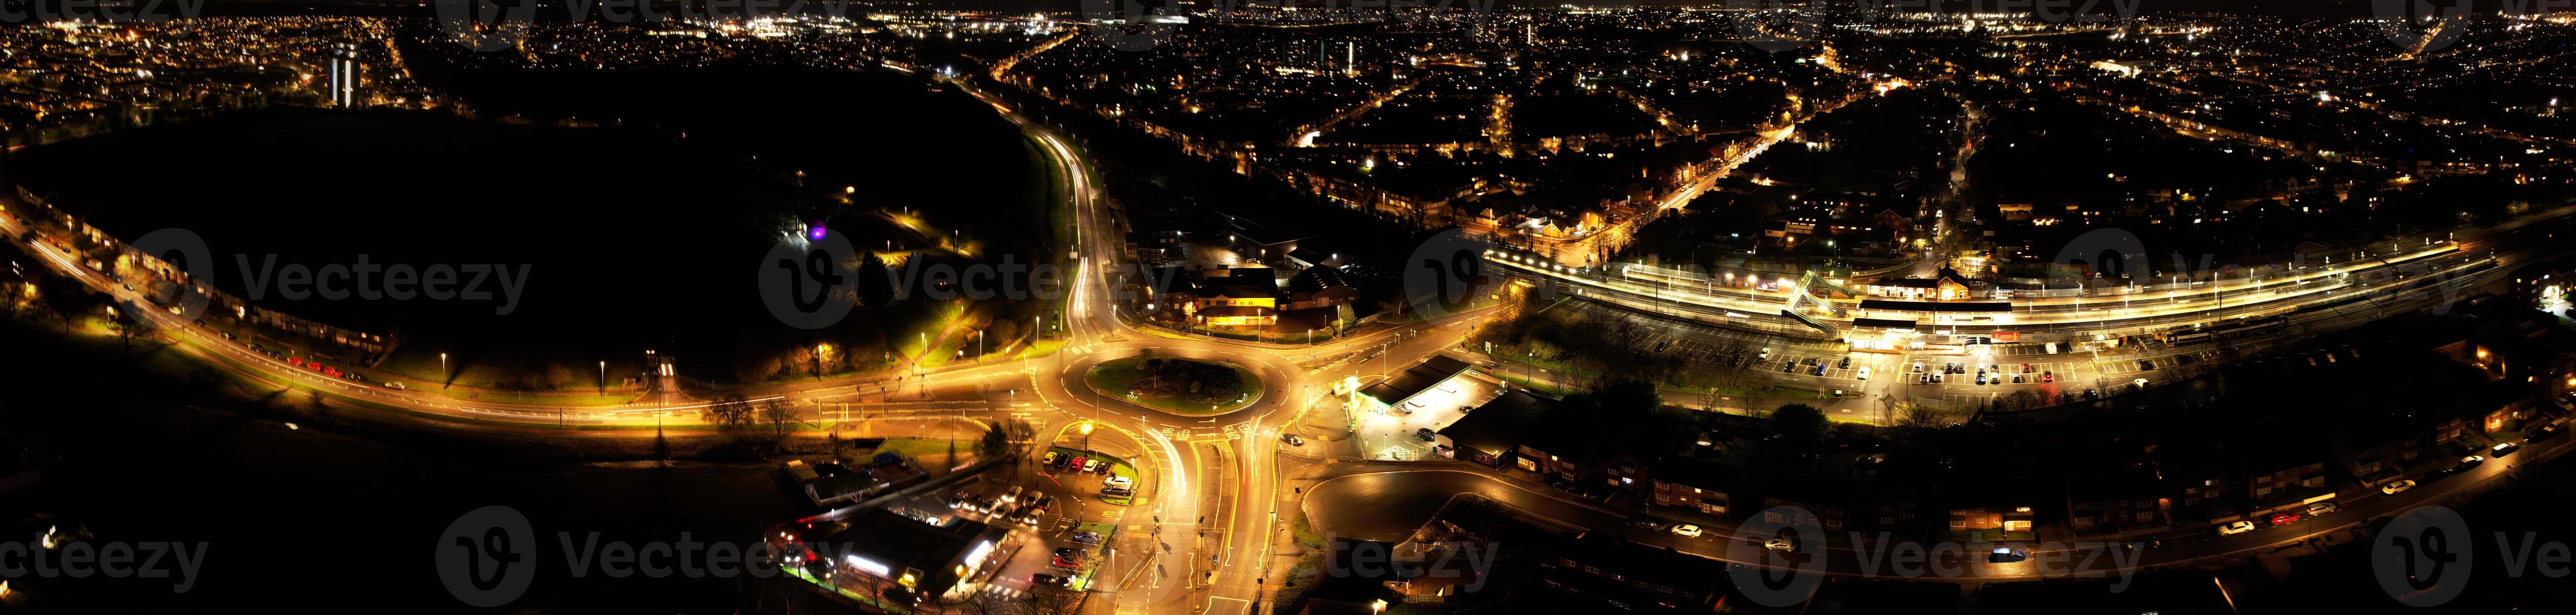 prachtige nachtelijke luchtfoto van de britse stad, hoge hoek drone's beelden van luton stad van engeland uk foto